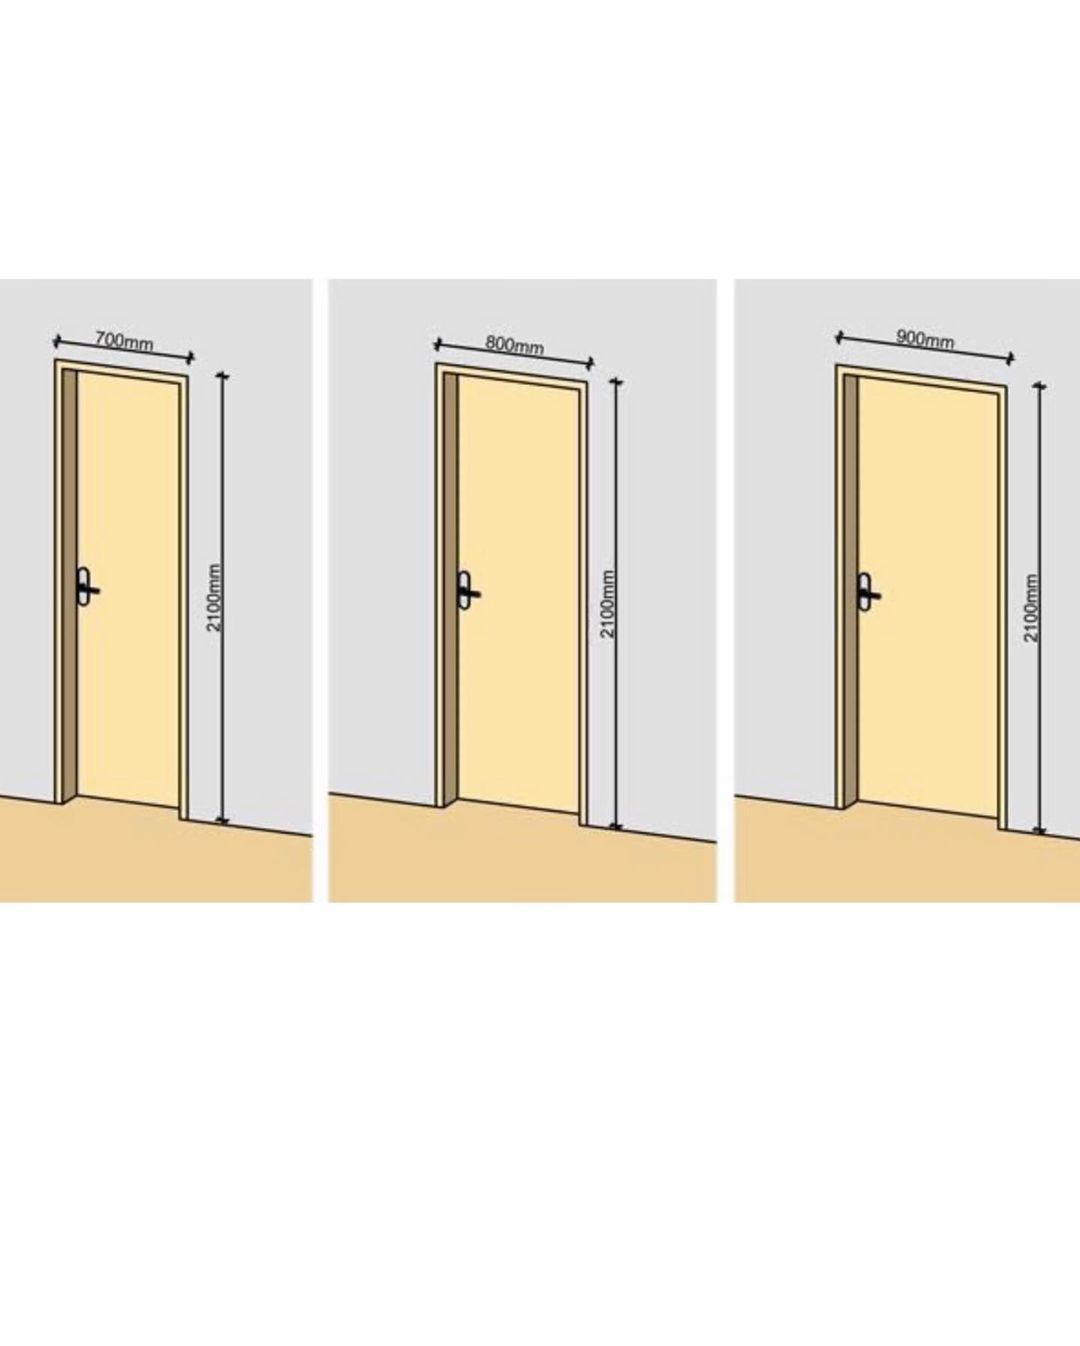 Какой размер дверей нужно. Высота проема межкомнатной двери стандарт. Стандартный размер полотна межкомнатной двери. Ширина дверного проема межкомнатной двери стандарт. Высота дверного проема межкомнатной двери стандарт.